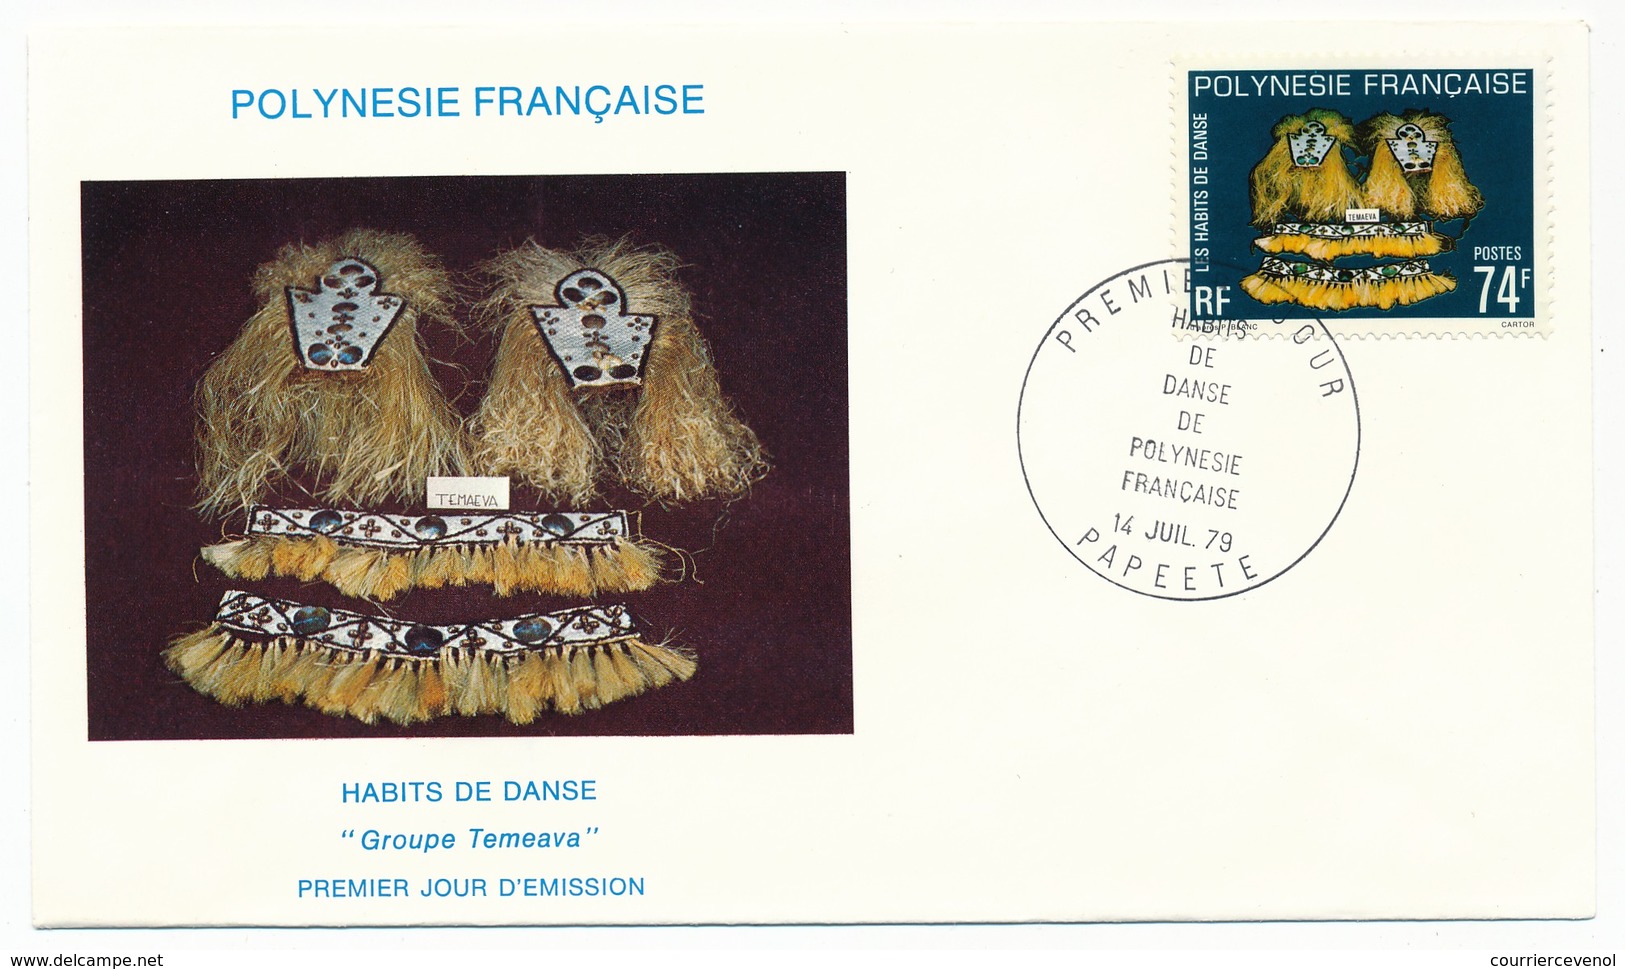 POLYNESIE FRANCAISE - FDC - Habits De Danse De Polynésie - Papeete - Juillet 1979 - FDC